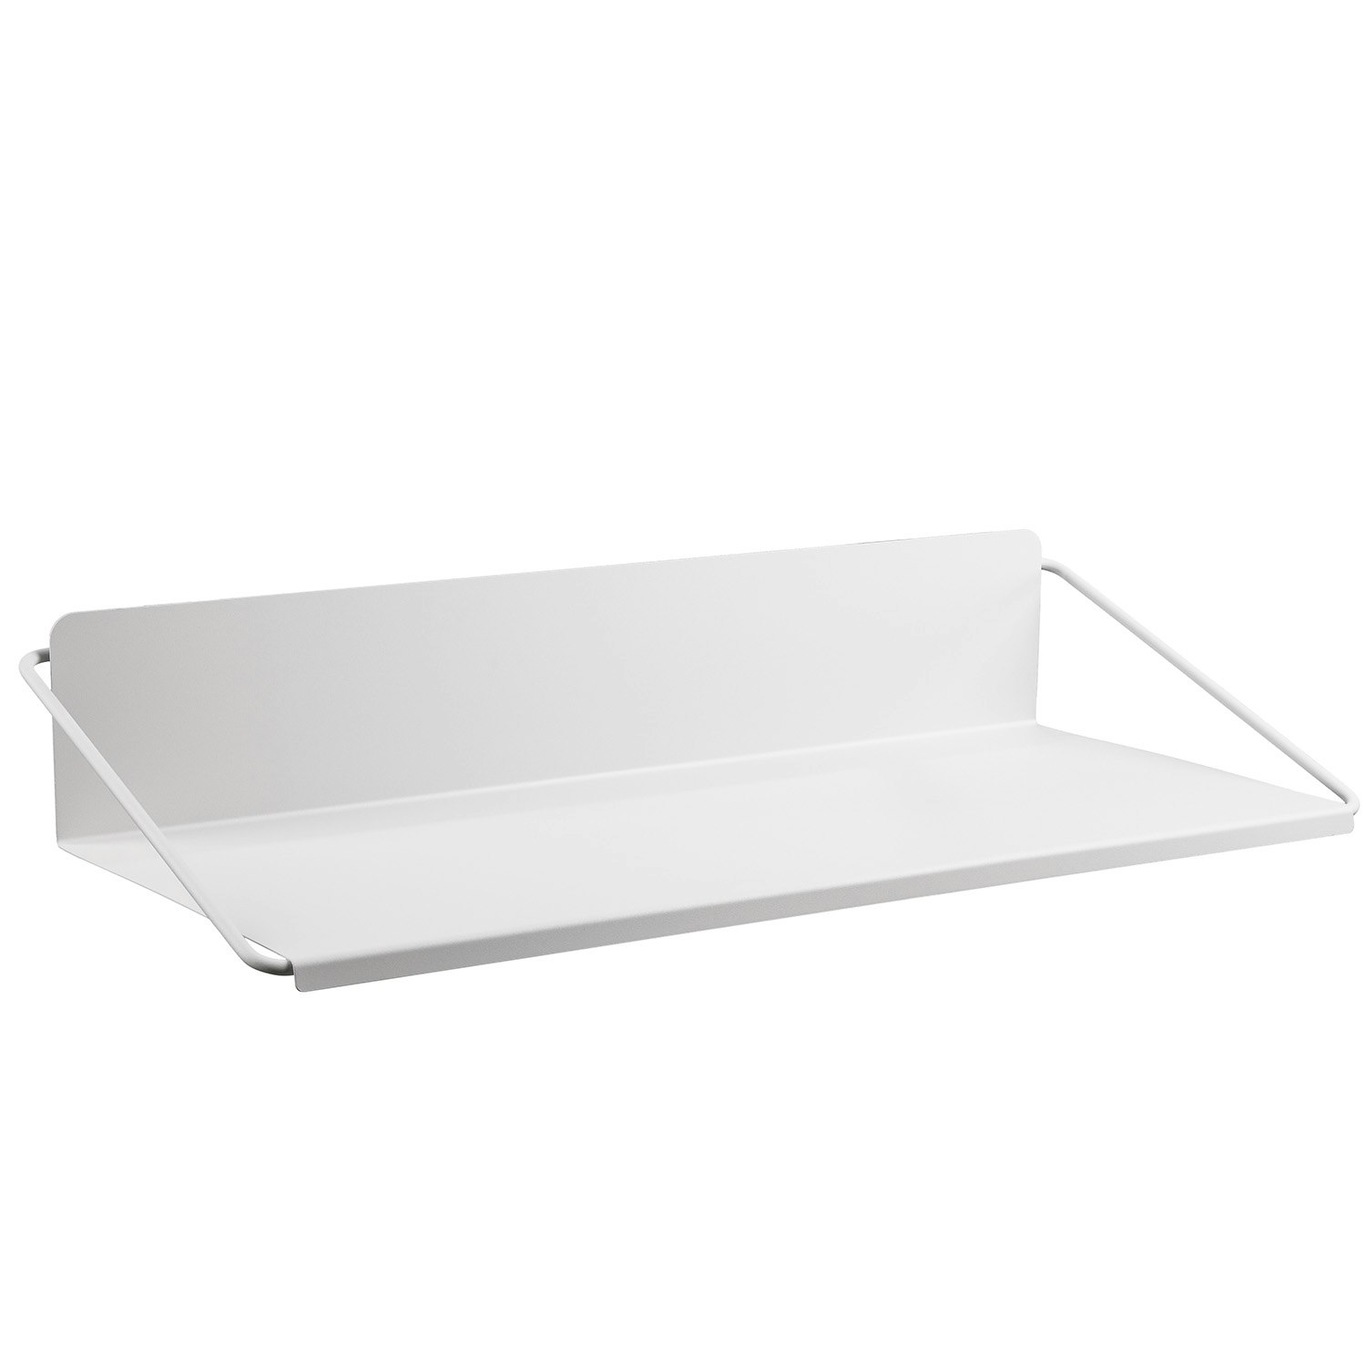 A-Wall Pöytä 95 cm, Soft Grey